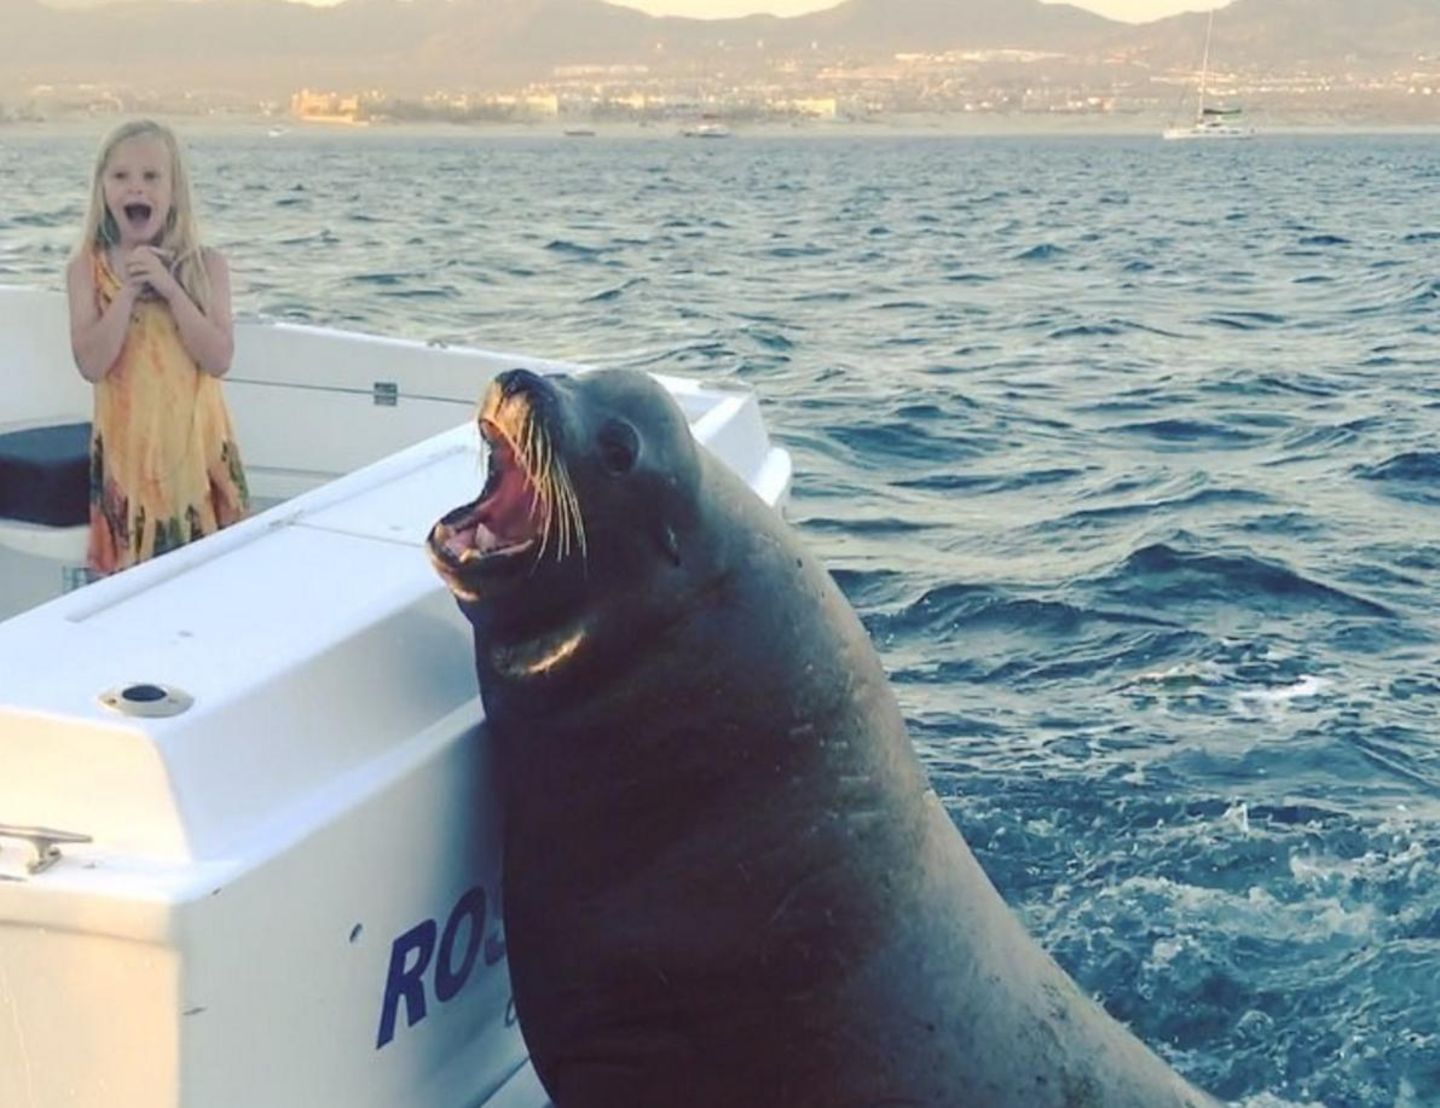 Cabo in Mexiko: Dieser riesige Seelöwe lässt sich von einem Motorboot mitnehmen